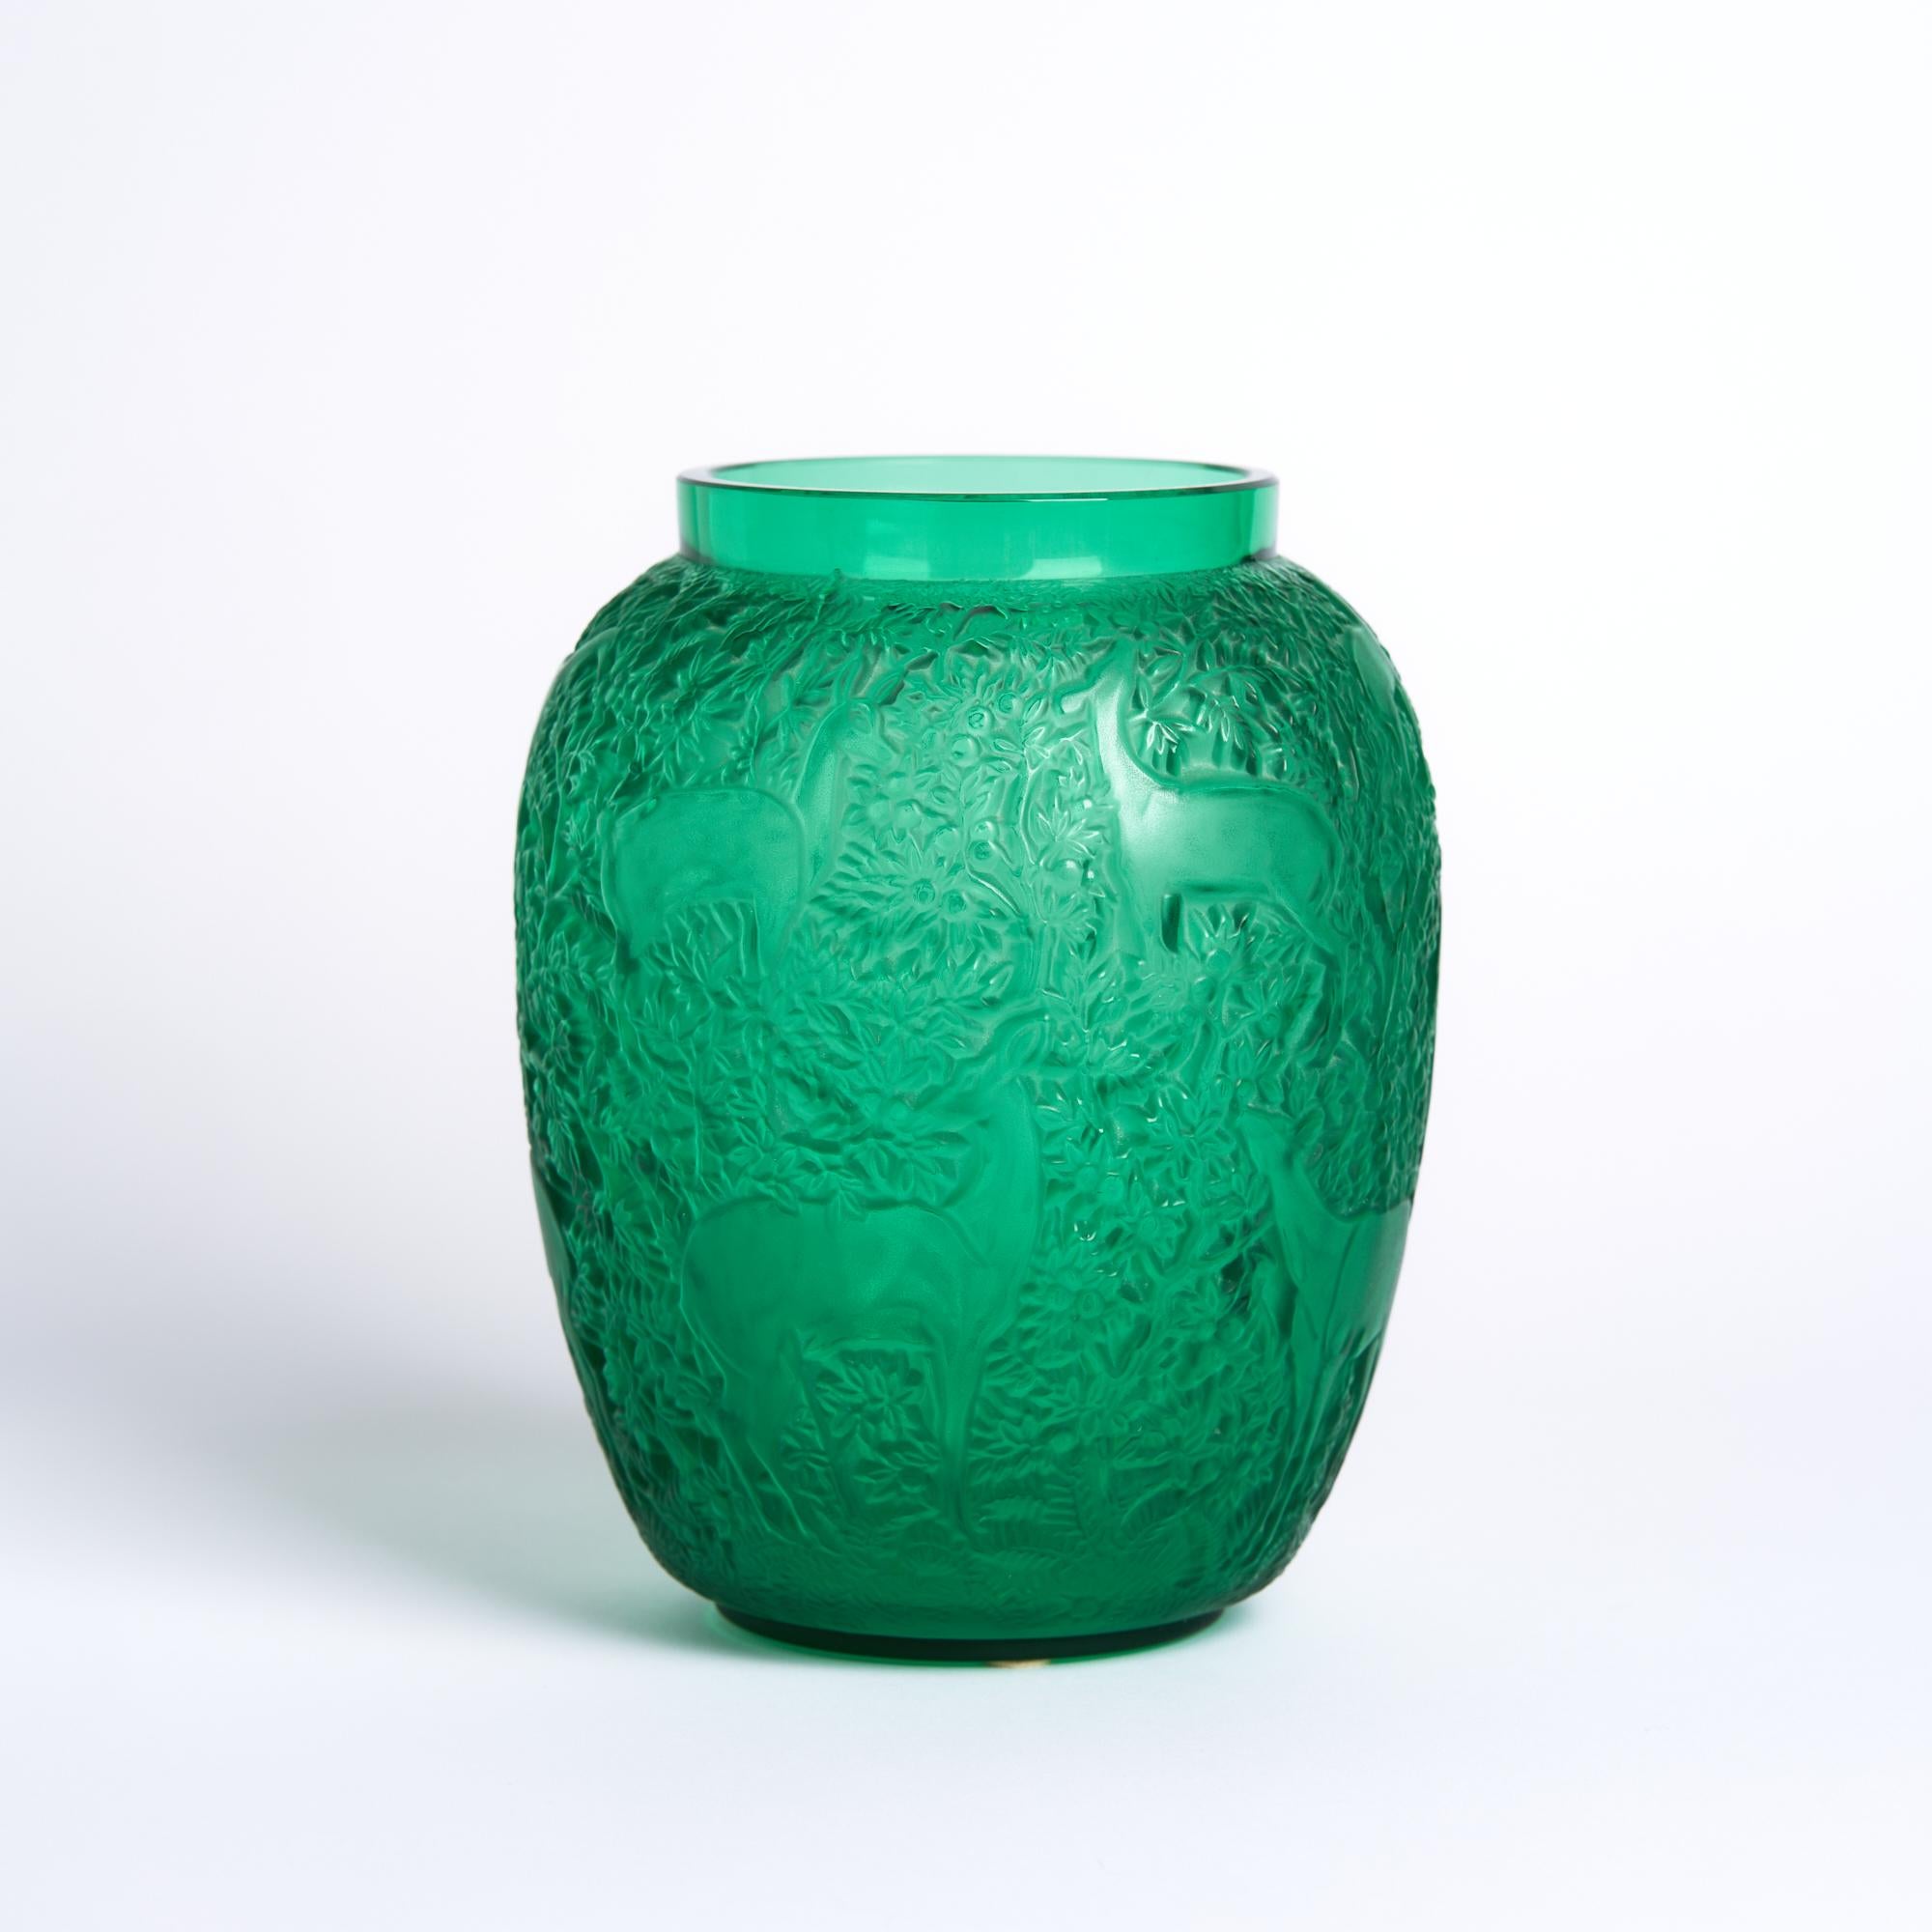 Vase à biches en verre vert Lalique

Ce vase mesure : 5.5 large x 5.5 profond x 6.75 pouces de haut 

Ce vase est en excellente condition vintage

Nous prenons nos photos dans un studio à éclairage contrôlé afin de montrer le plus de détails